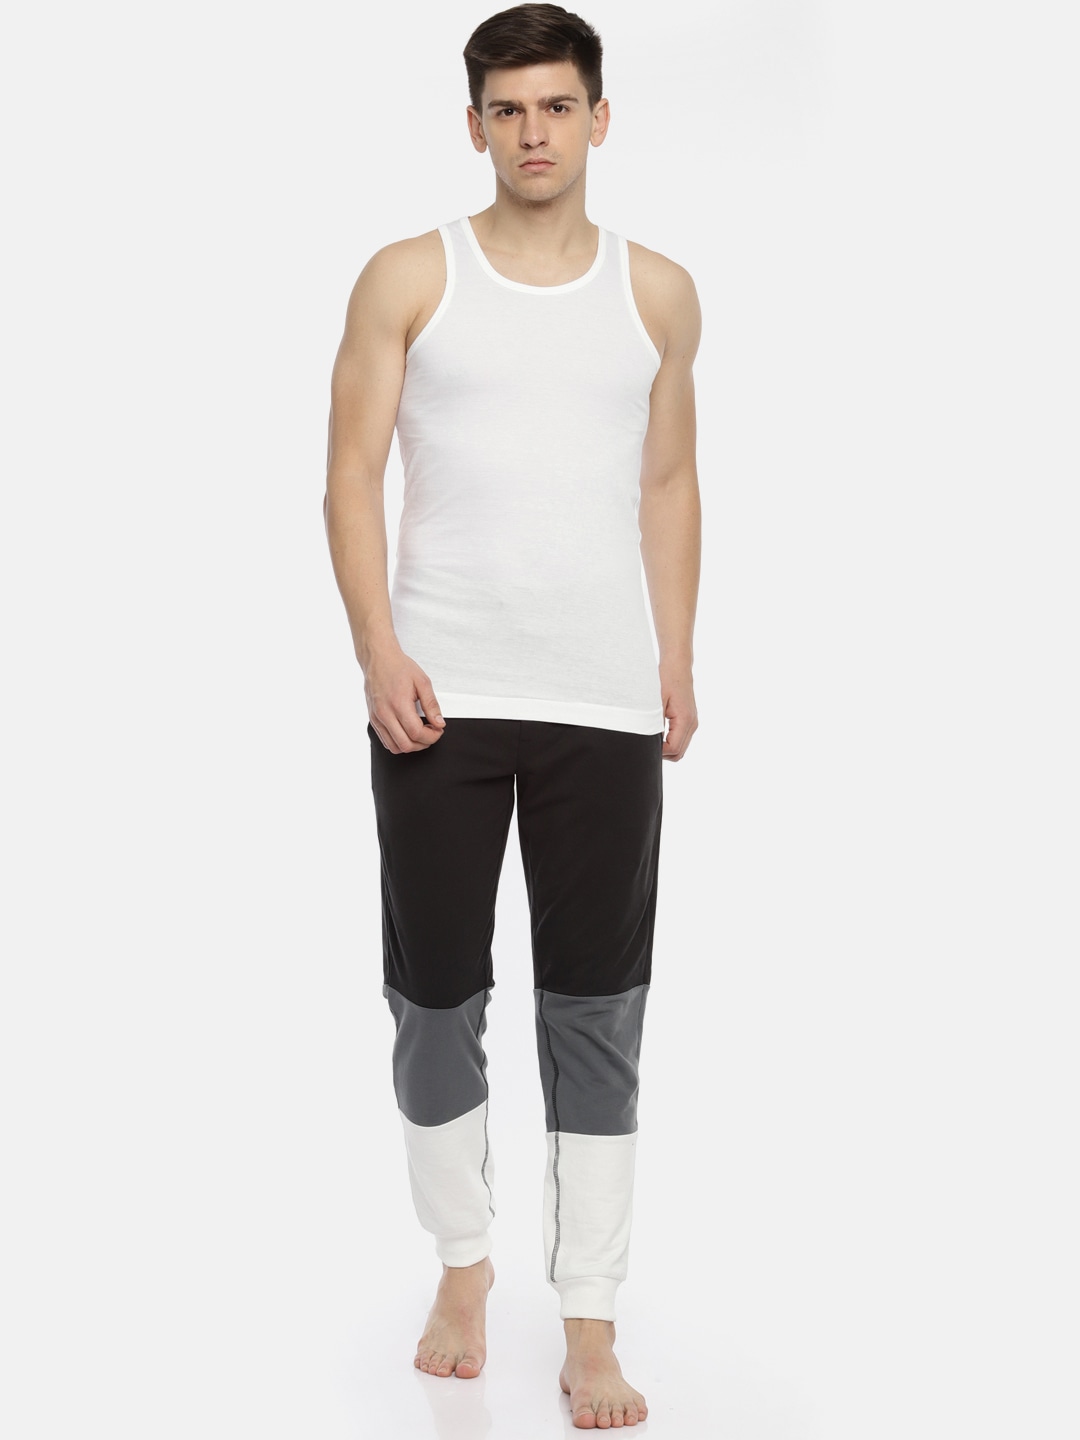 Clothing Innerwear Vests | Pepe Jeans Men Pack of 2 Innerwear Vests 8904311302193 - GO36172